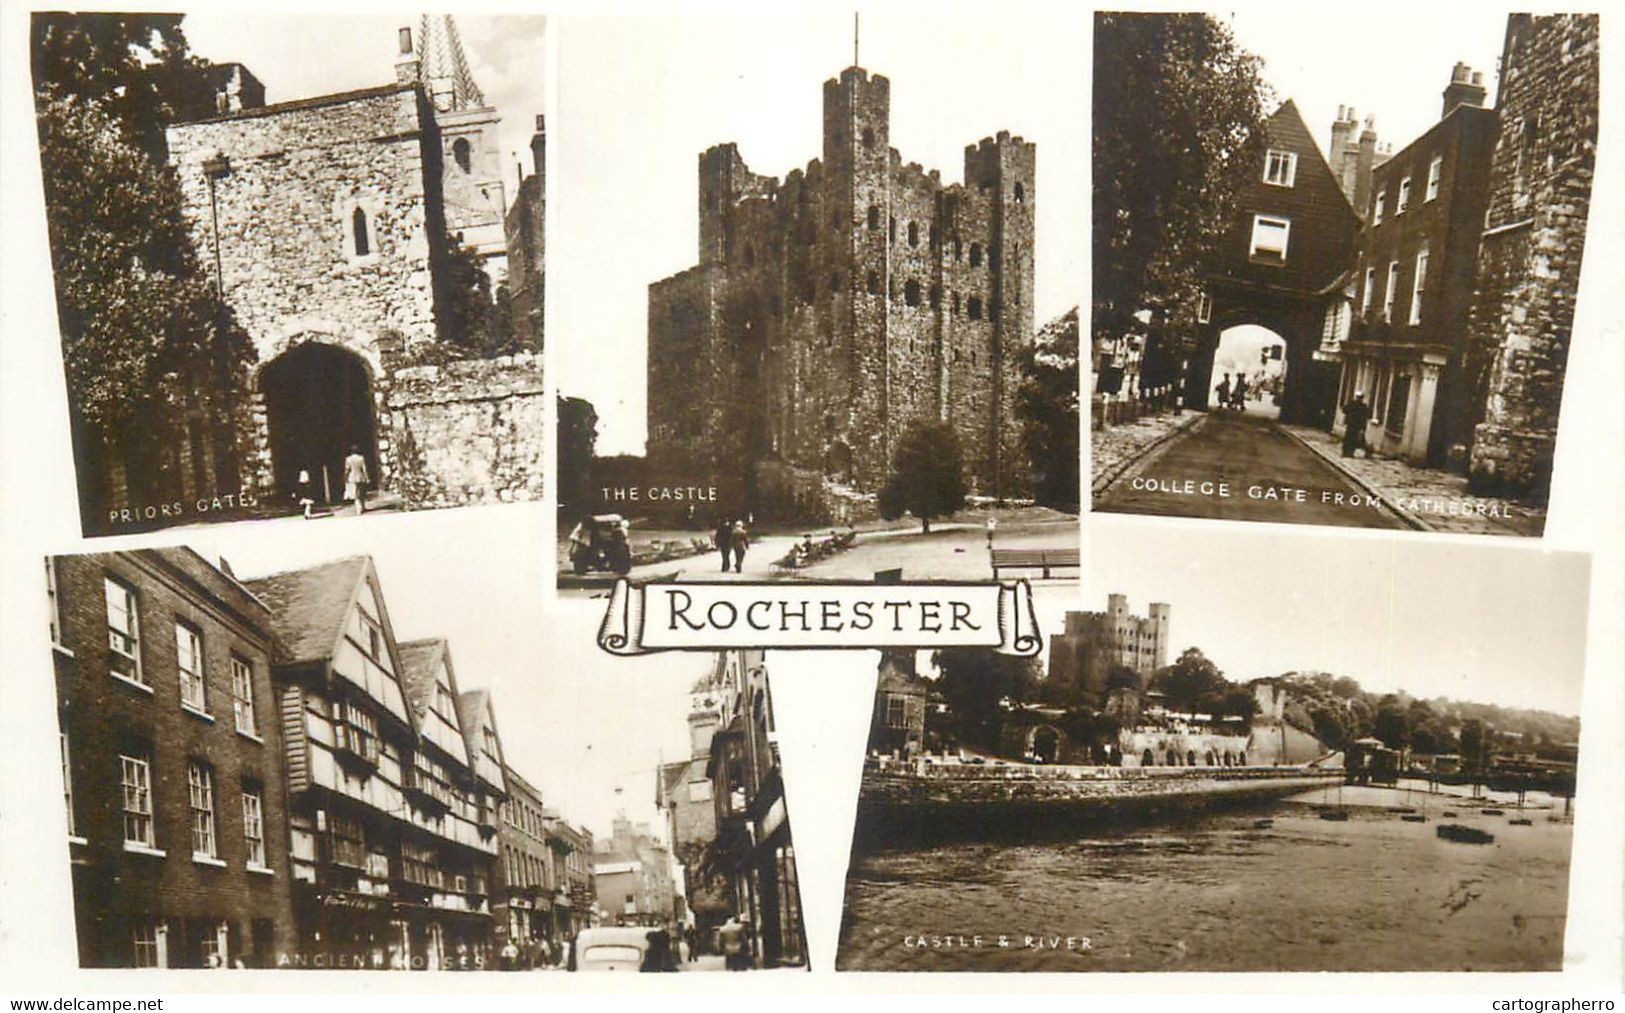 Rochester - Rochester